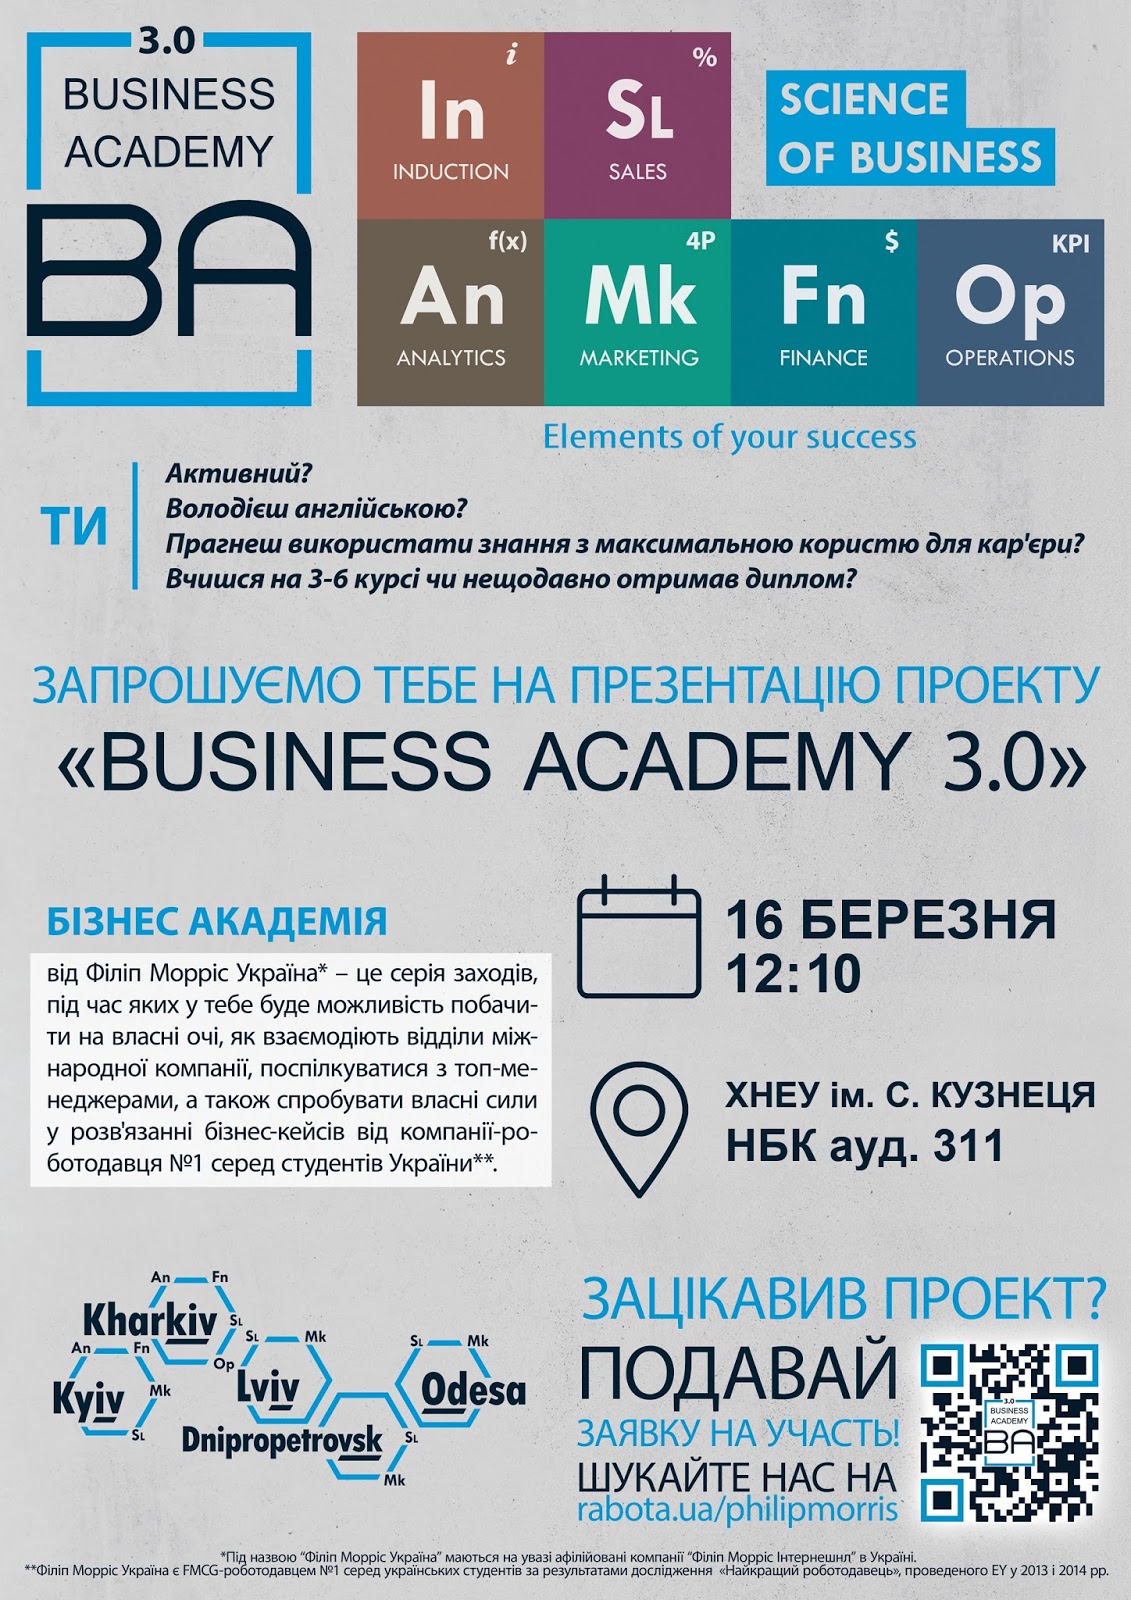 В ХНЕУ ім. С. Кузнеця відбудеться презентація проекта "Business Academy 3.0" від Філіп Морріс Україна